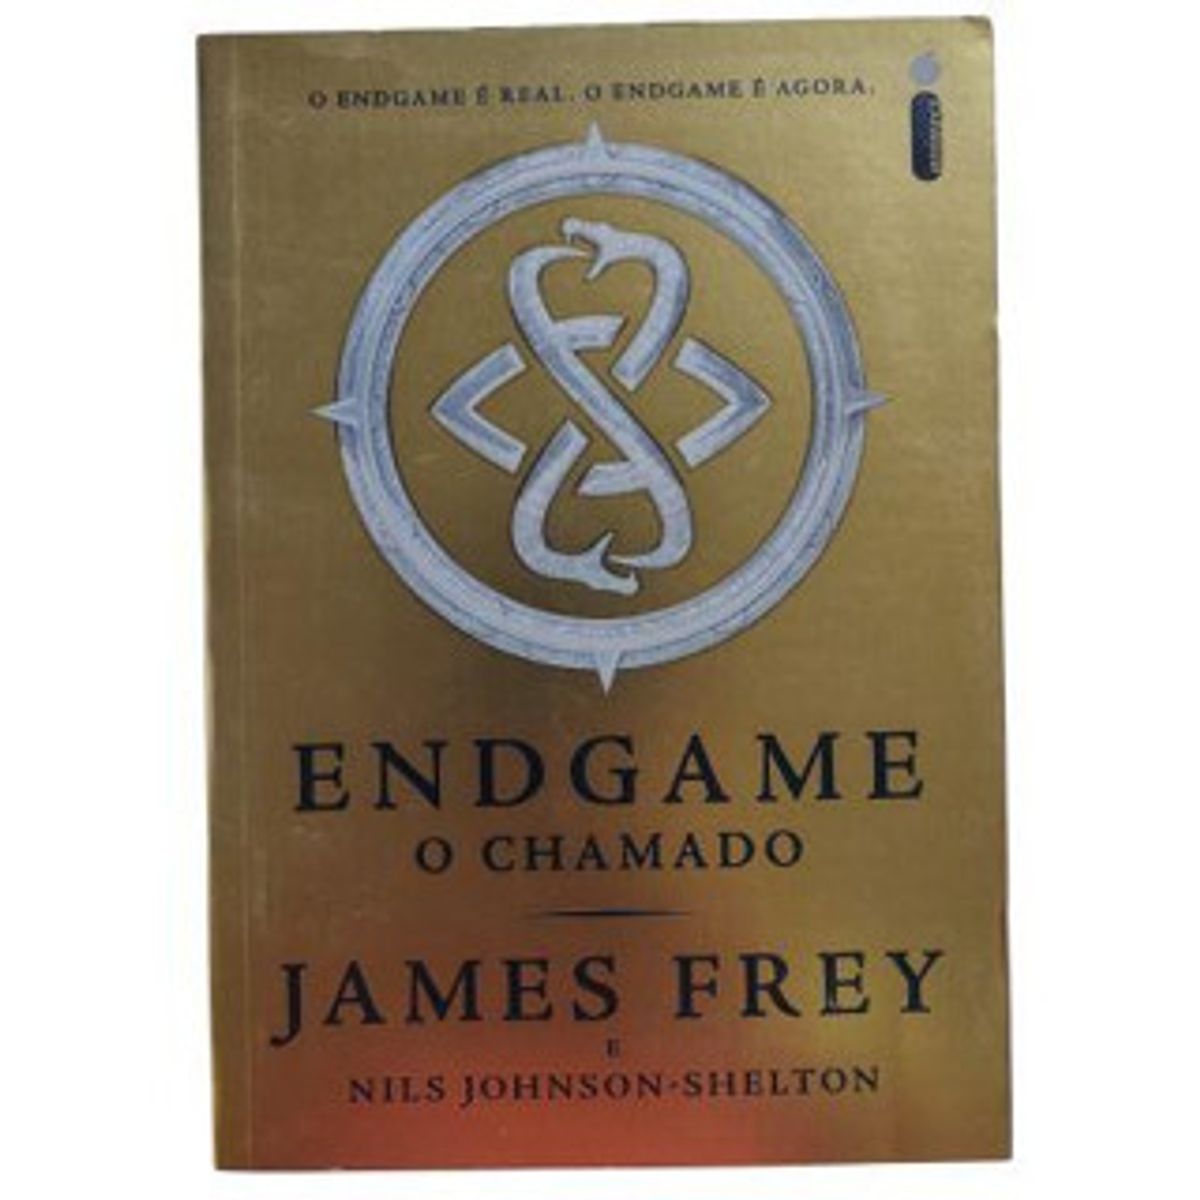 Endgame, O Chamado - James Frey e Nils Johnson-Shelton